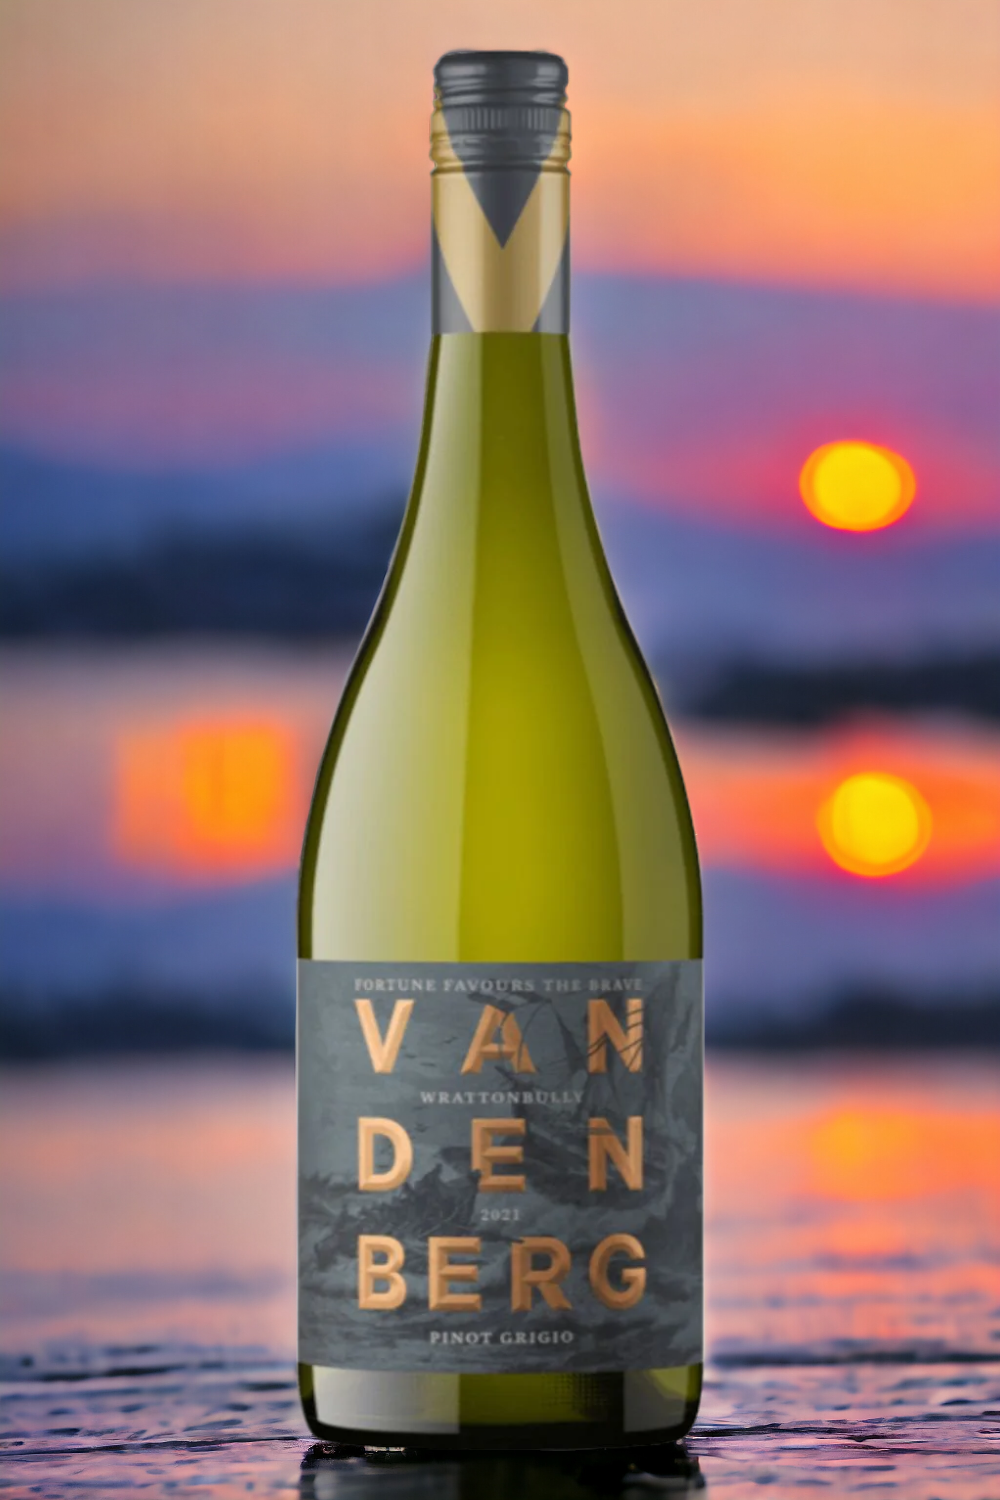 Vandenberg Gold Pinot Grigio 2021 (6 per case)